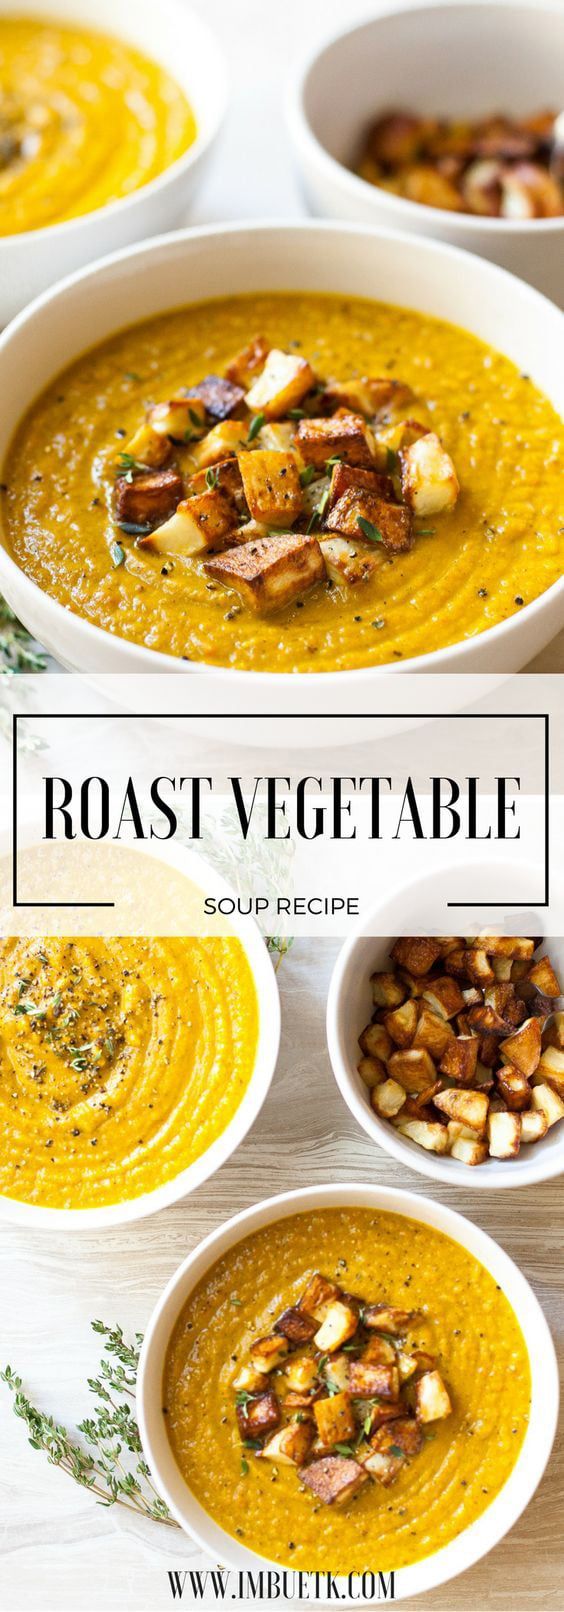 turmeric roast vegetable soup